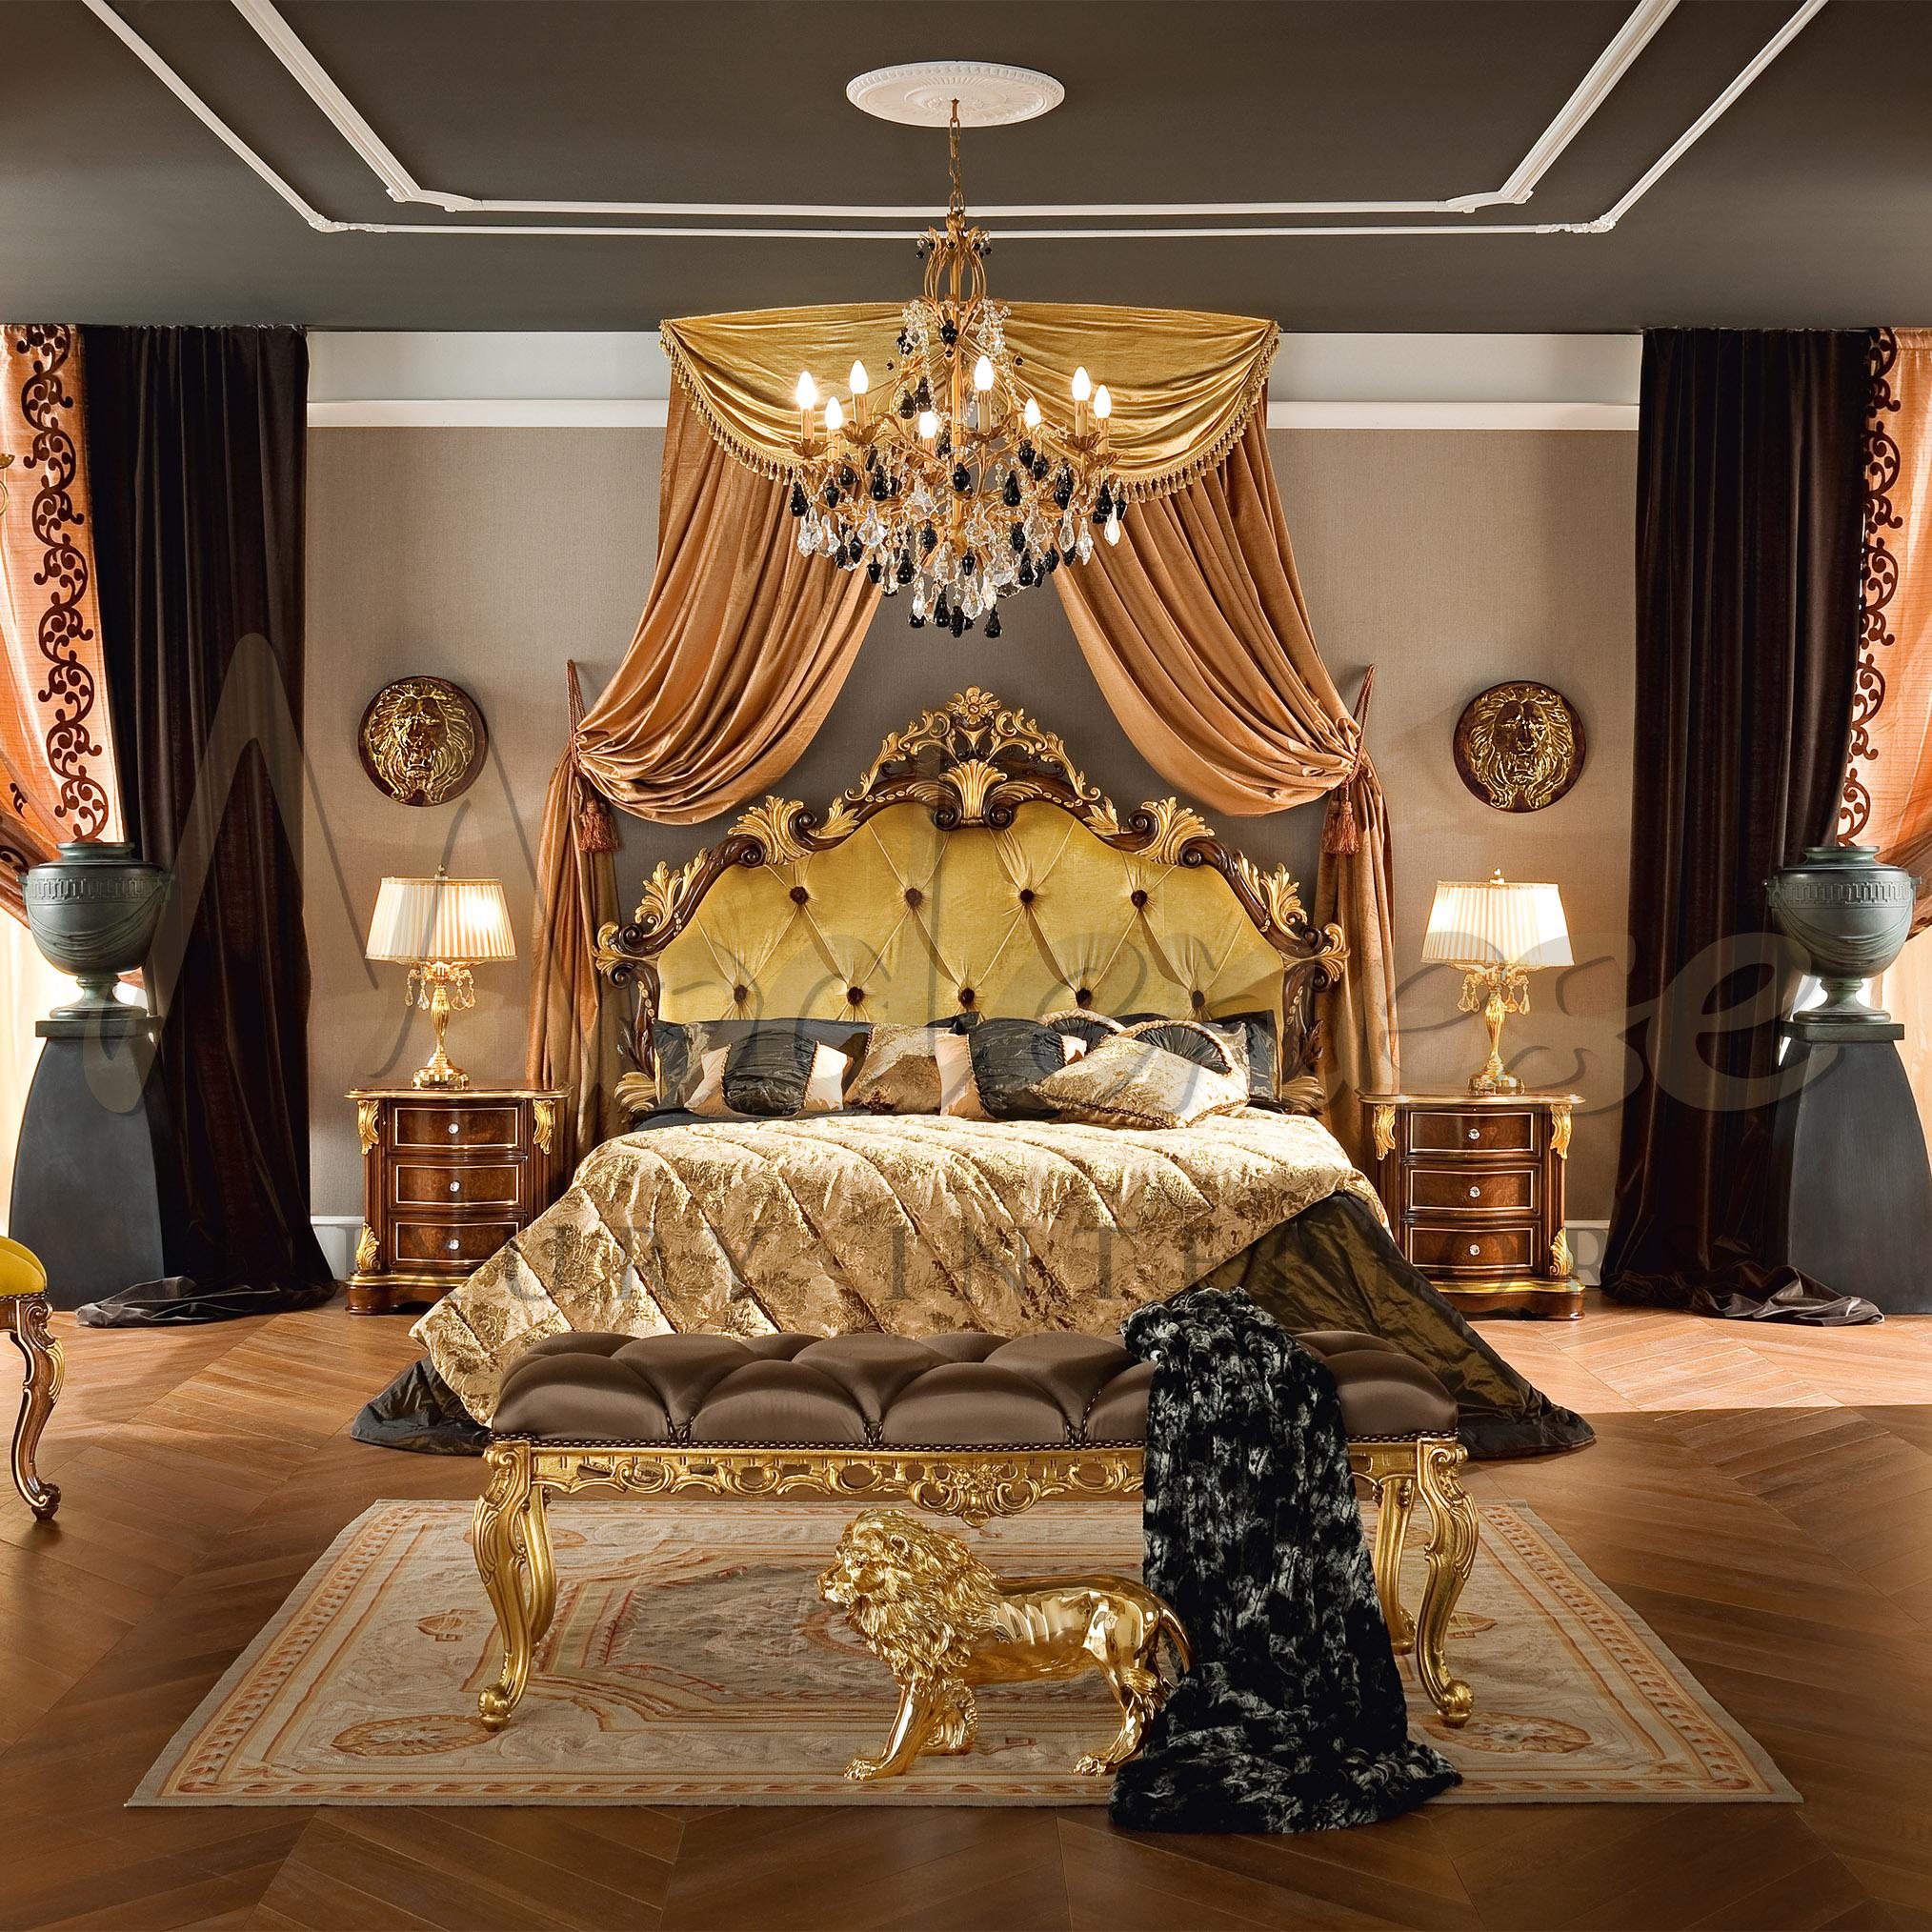 Entdecken Sie mit Modenese Luxury Interiors die italienischen Barocktraditionen in einem neuen Licht und bewundern Sie diese lange, auffällige Bettbank Bella Vita mit brauner, satinierter Polsterung und passenden Knöpfen, die auch in der